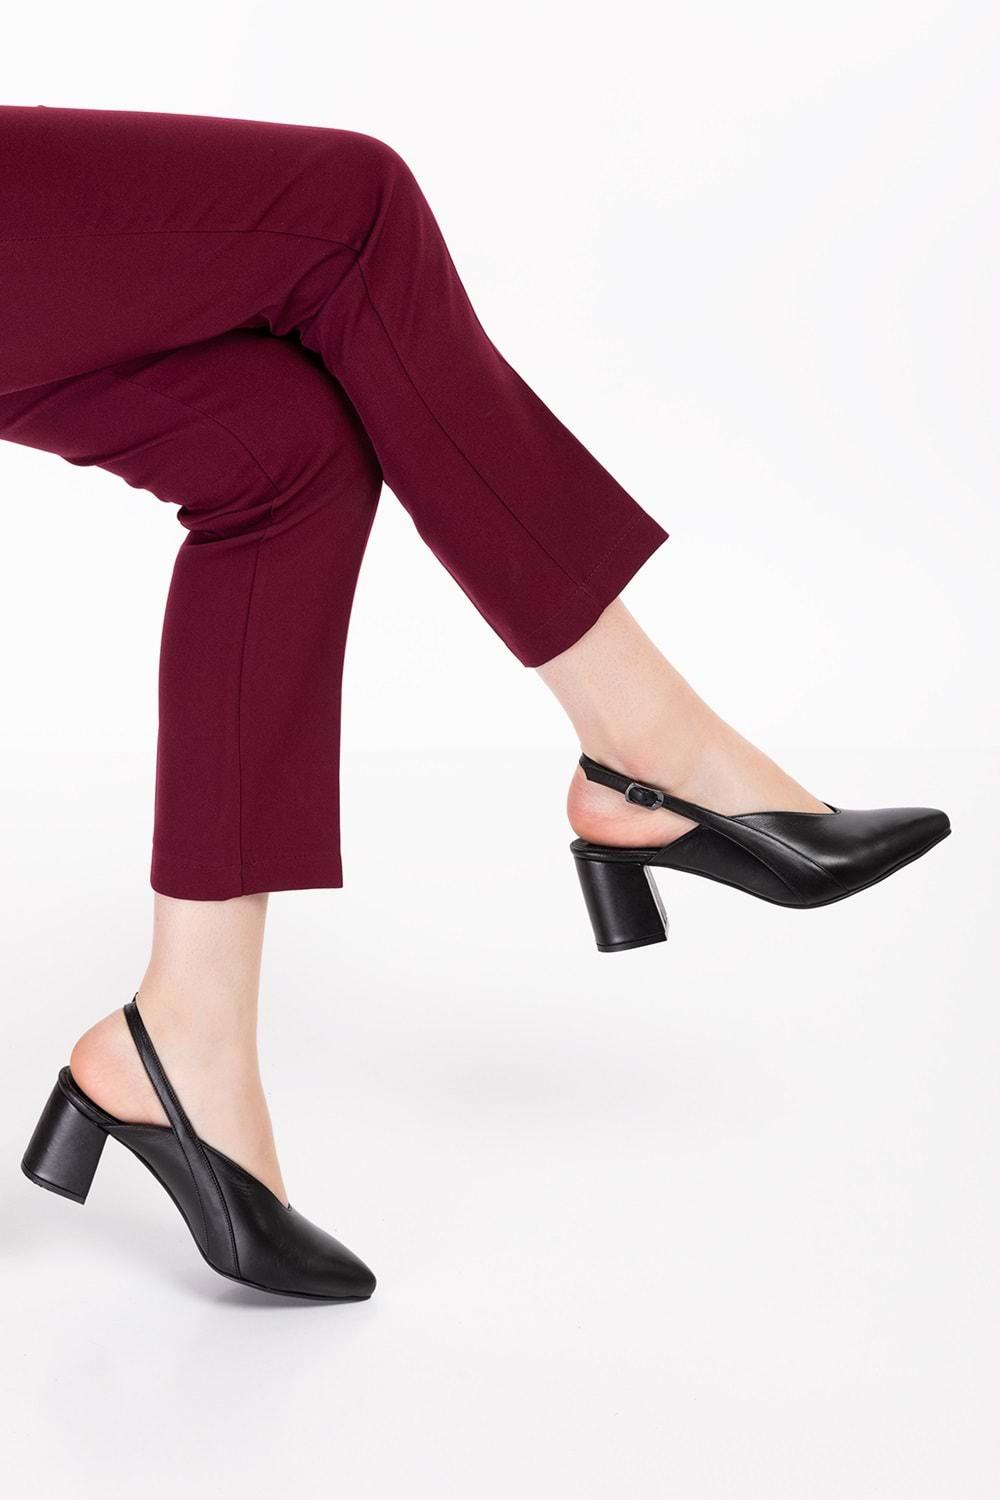 Gondol Kadın Hakiki Deri Klasik Topuklu Ayakkabı şhn.813 - Siyah - 35